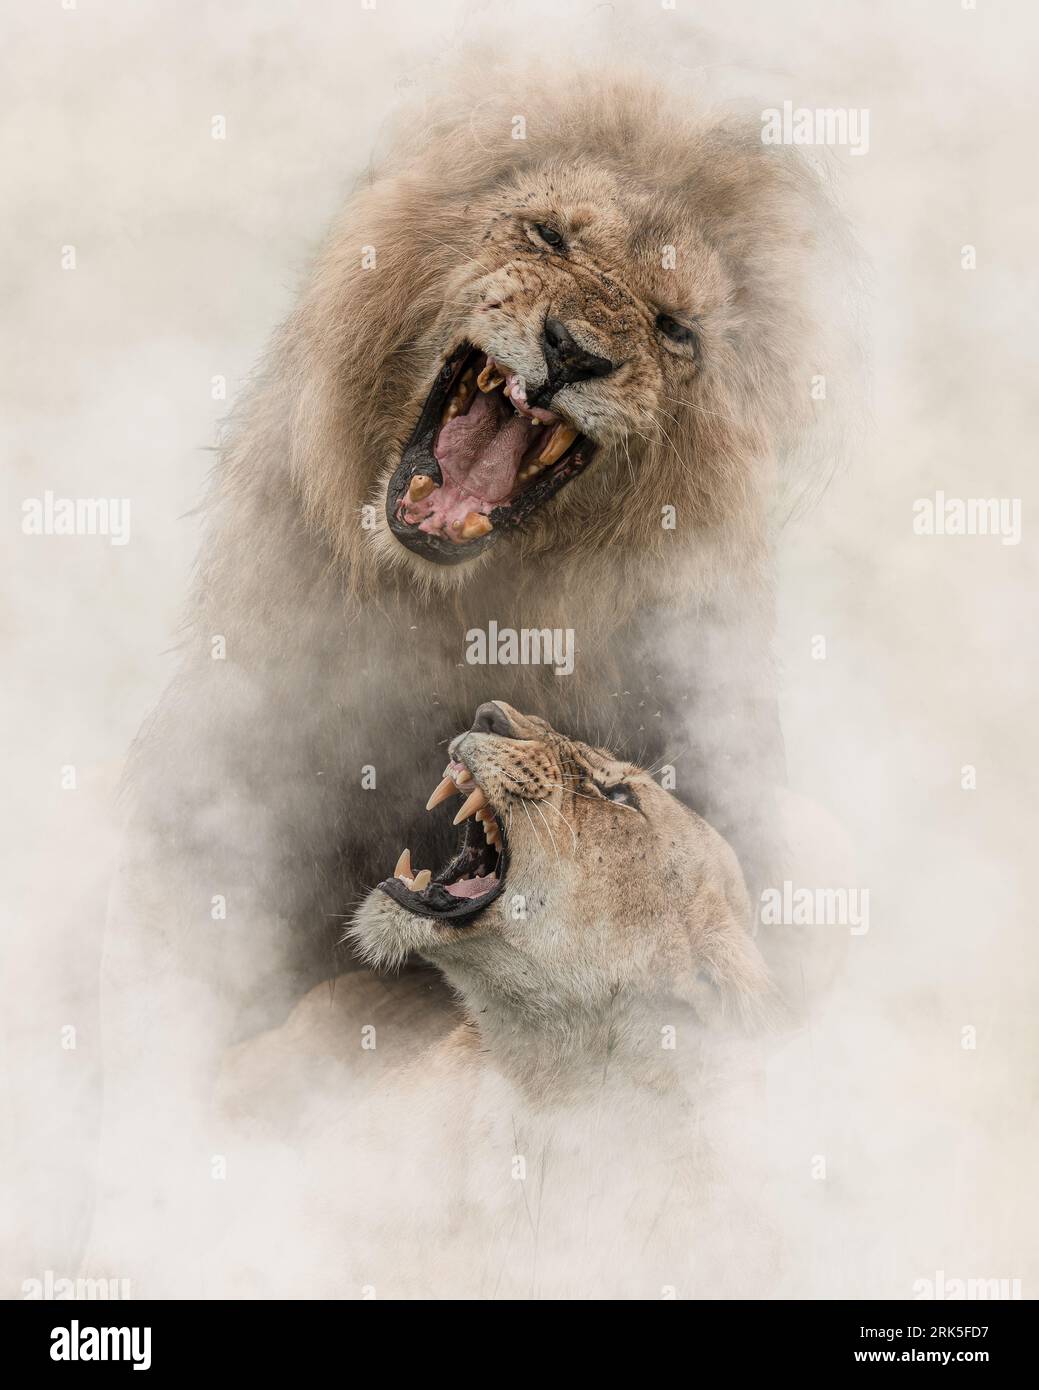 Tiro vertical de dos majestuosos leones con la boca abierta mientras rugen, mostrando sus impresionantes colmillos afilados Foto de stock